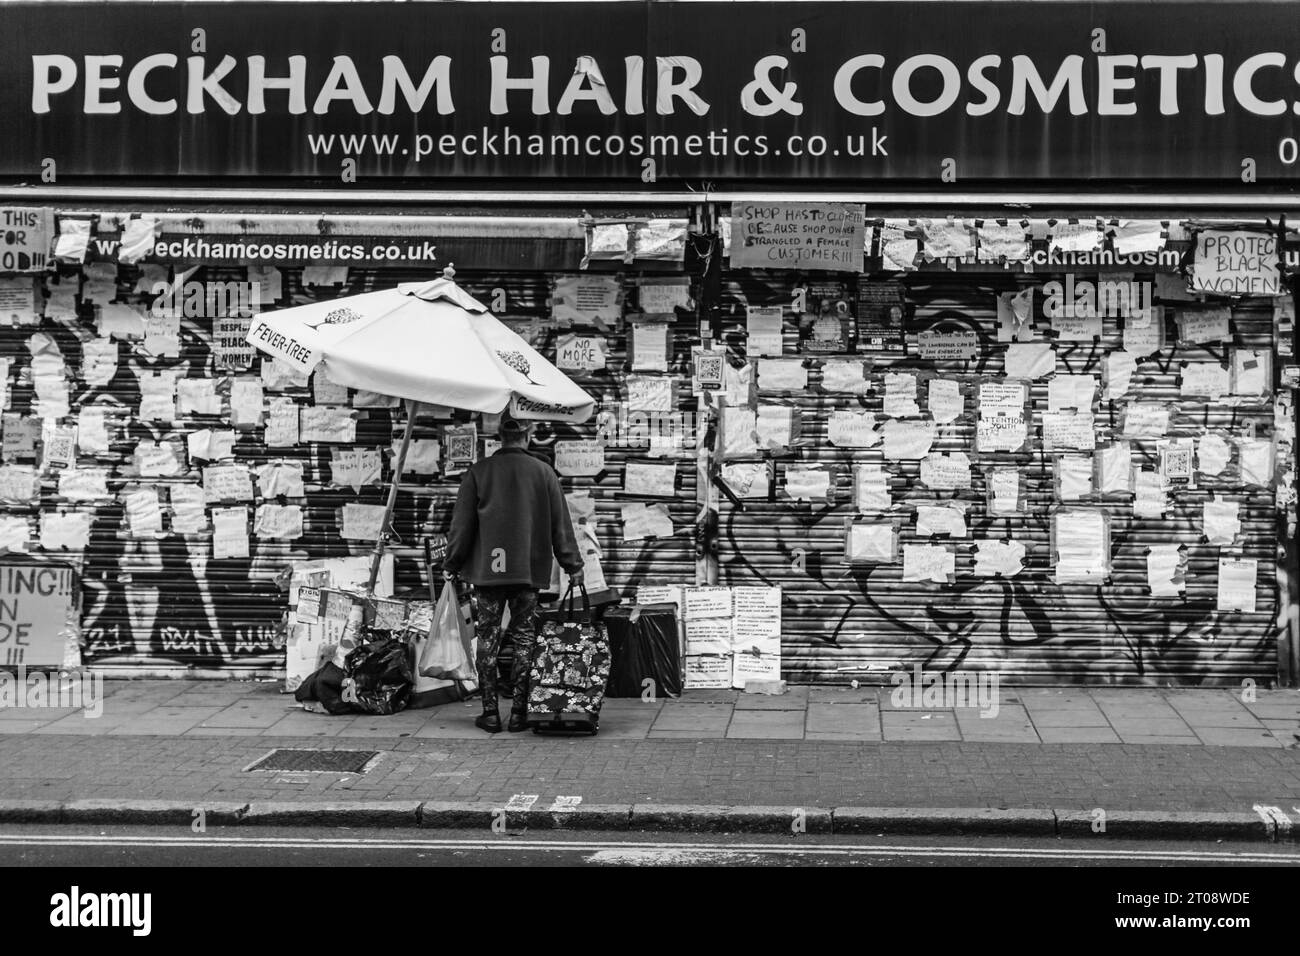 "Halte deine Hände von schwarzen Frauen!" Protest außerhalb von Peckham Hair & Cosmetics nach einem Angriff auf einen Kunden. Stockfoto